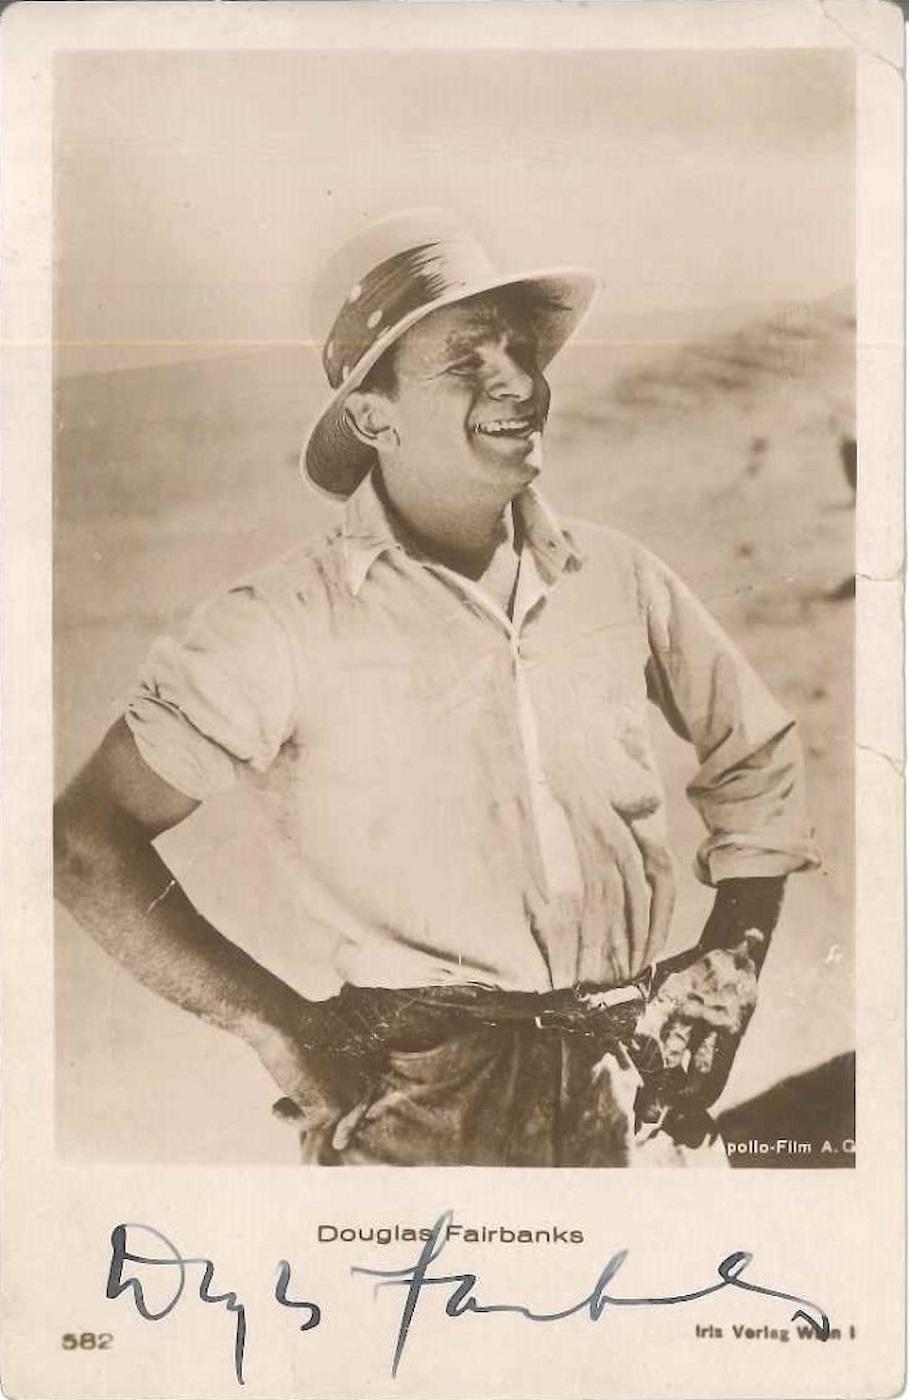 Unknown Portrait Photograph - Photo-postcard with Portrait and Autograph by Douglas Fairbanks - 1930 ca.